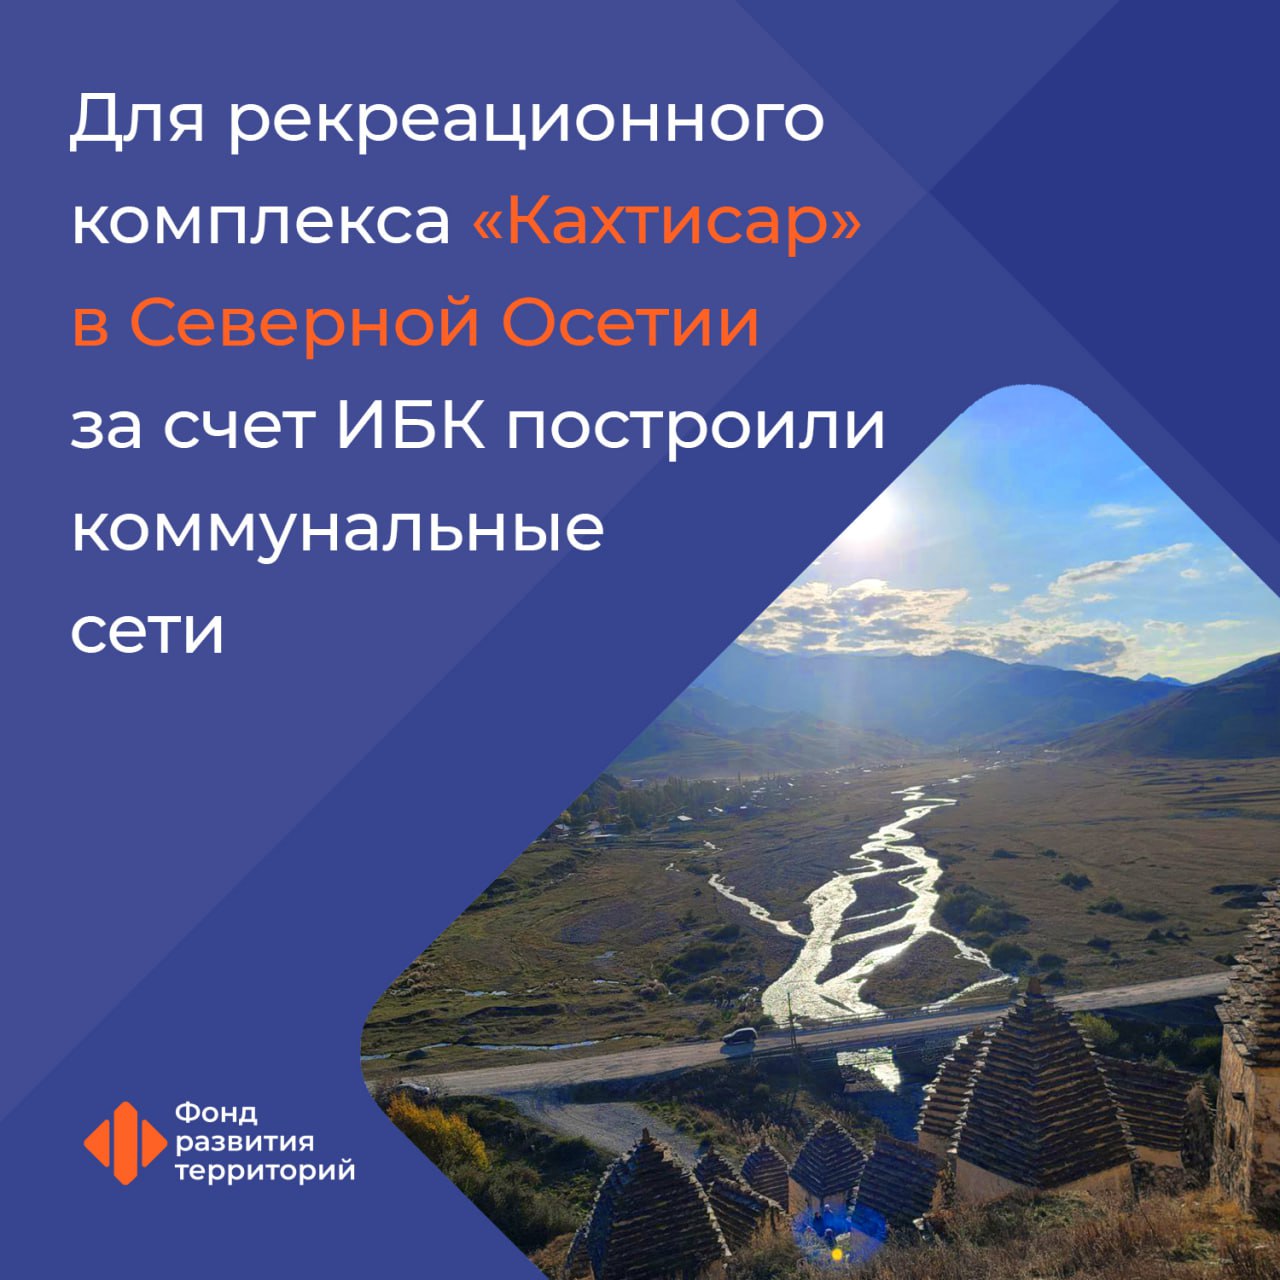 Для рекреационного комплекса «Кахтисар» в Северной Осетии за счет ИБК построили коммунальные сети